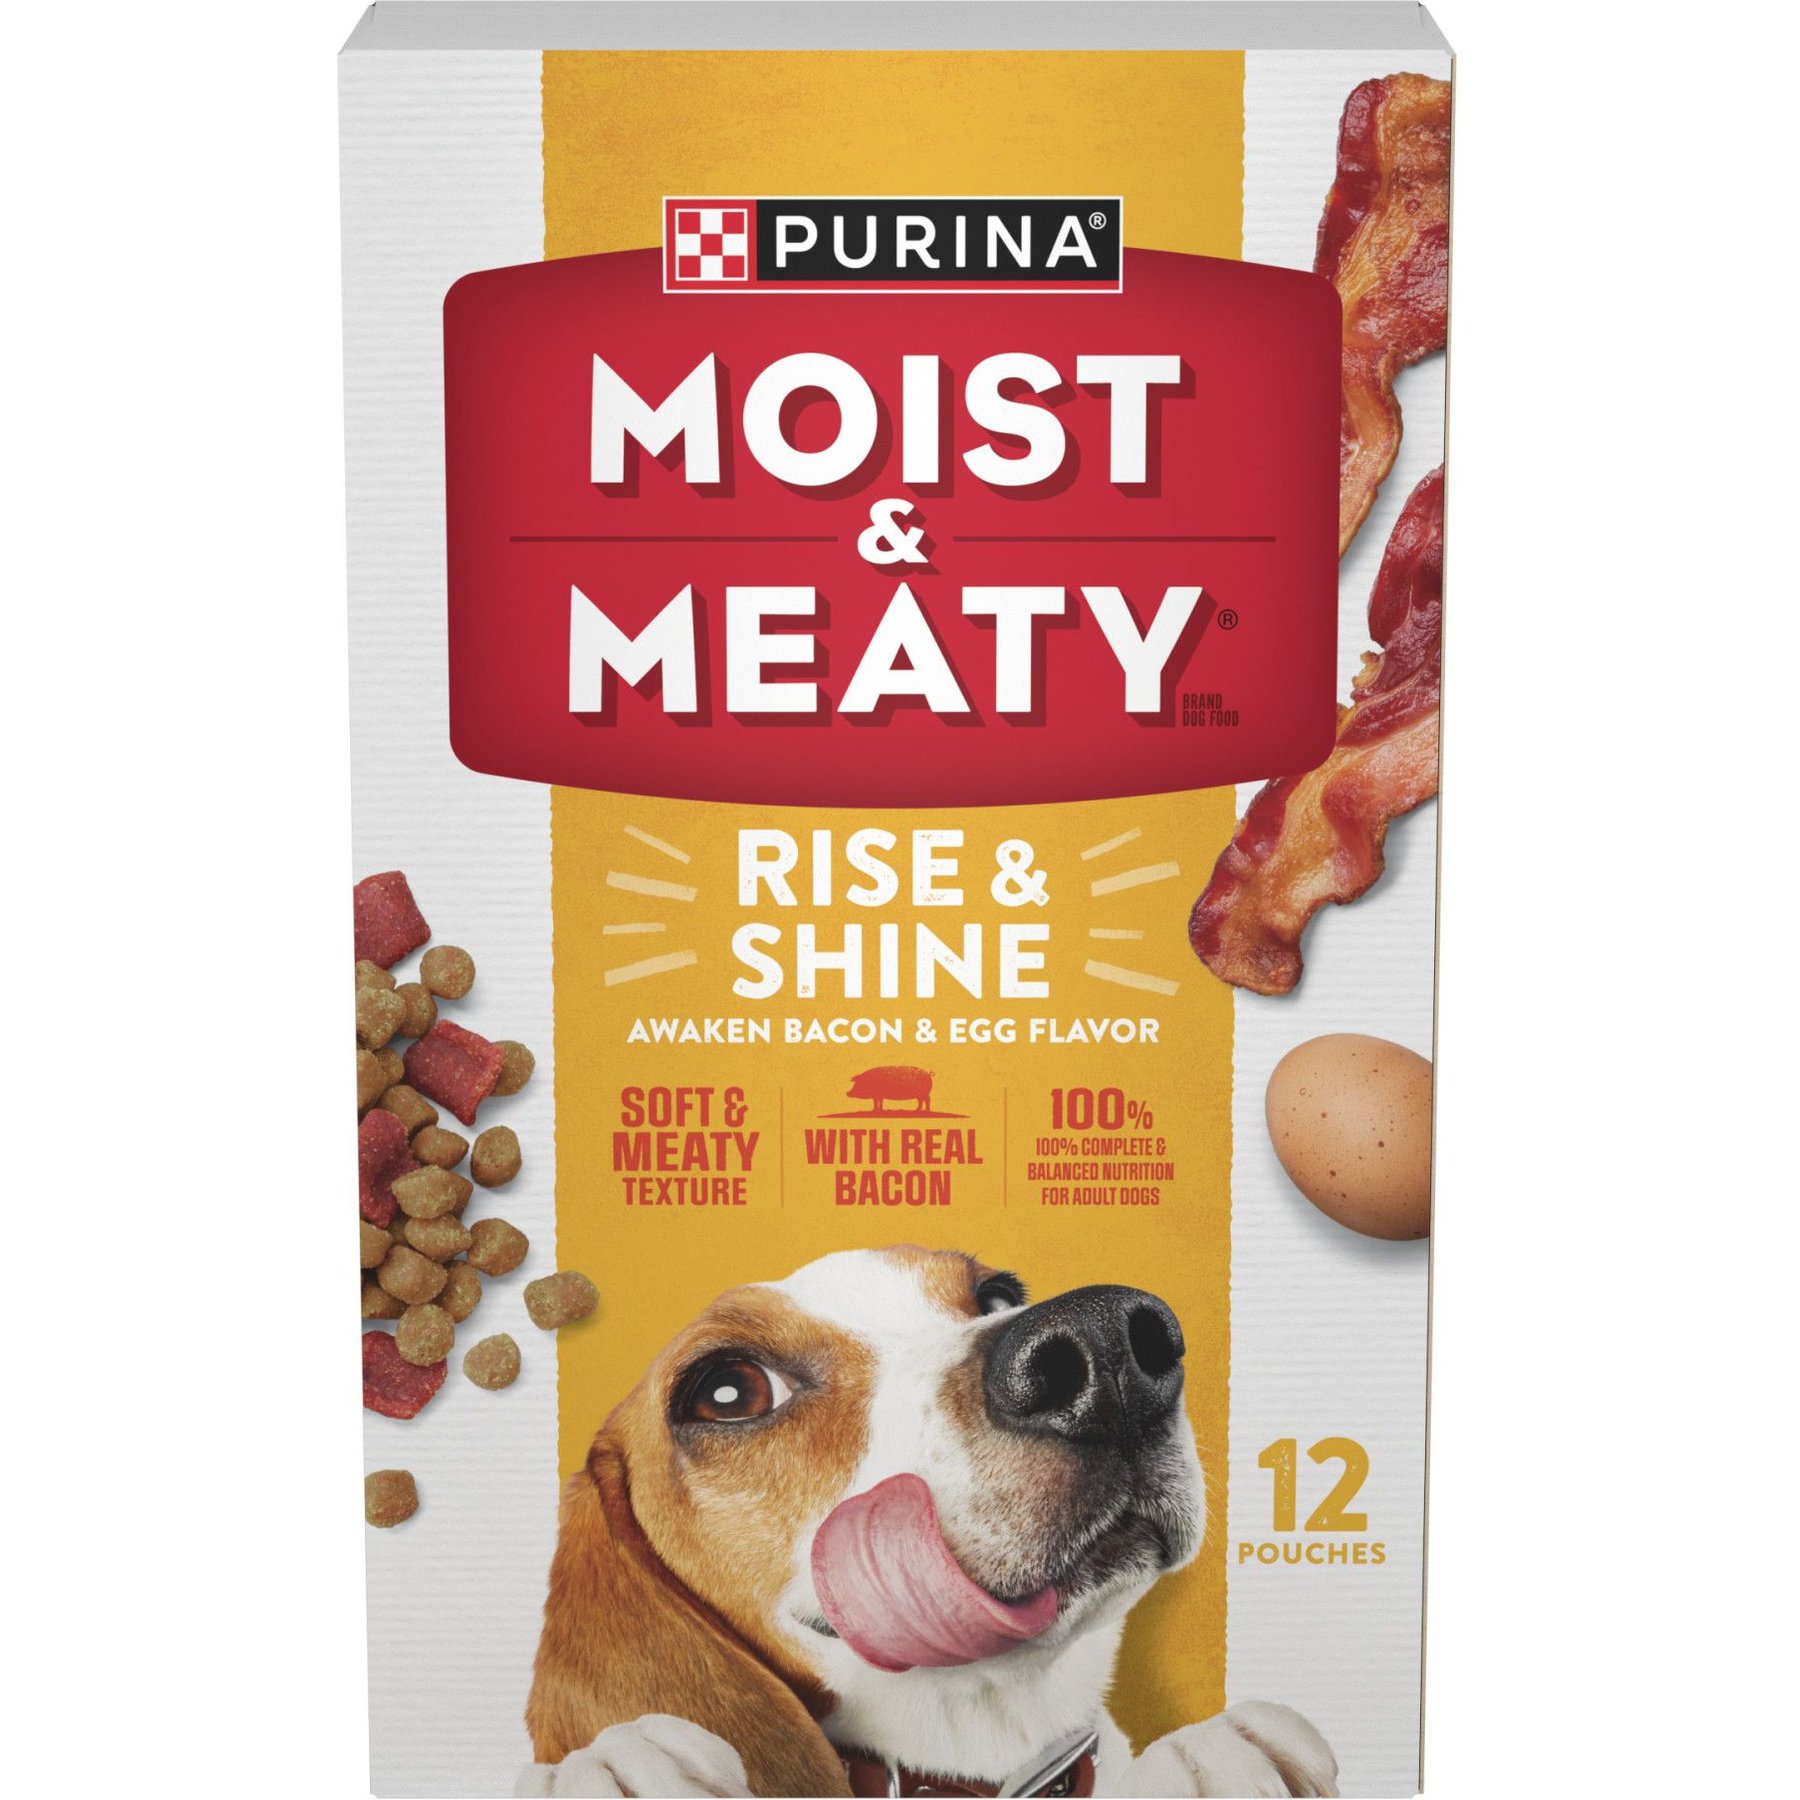 MOIST & MEATY Rise & Shine Awaken Bacon & Egg Flavor Dry Dog Food